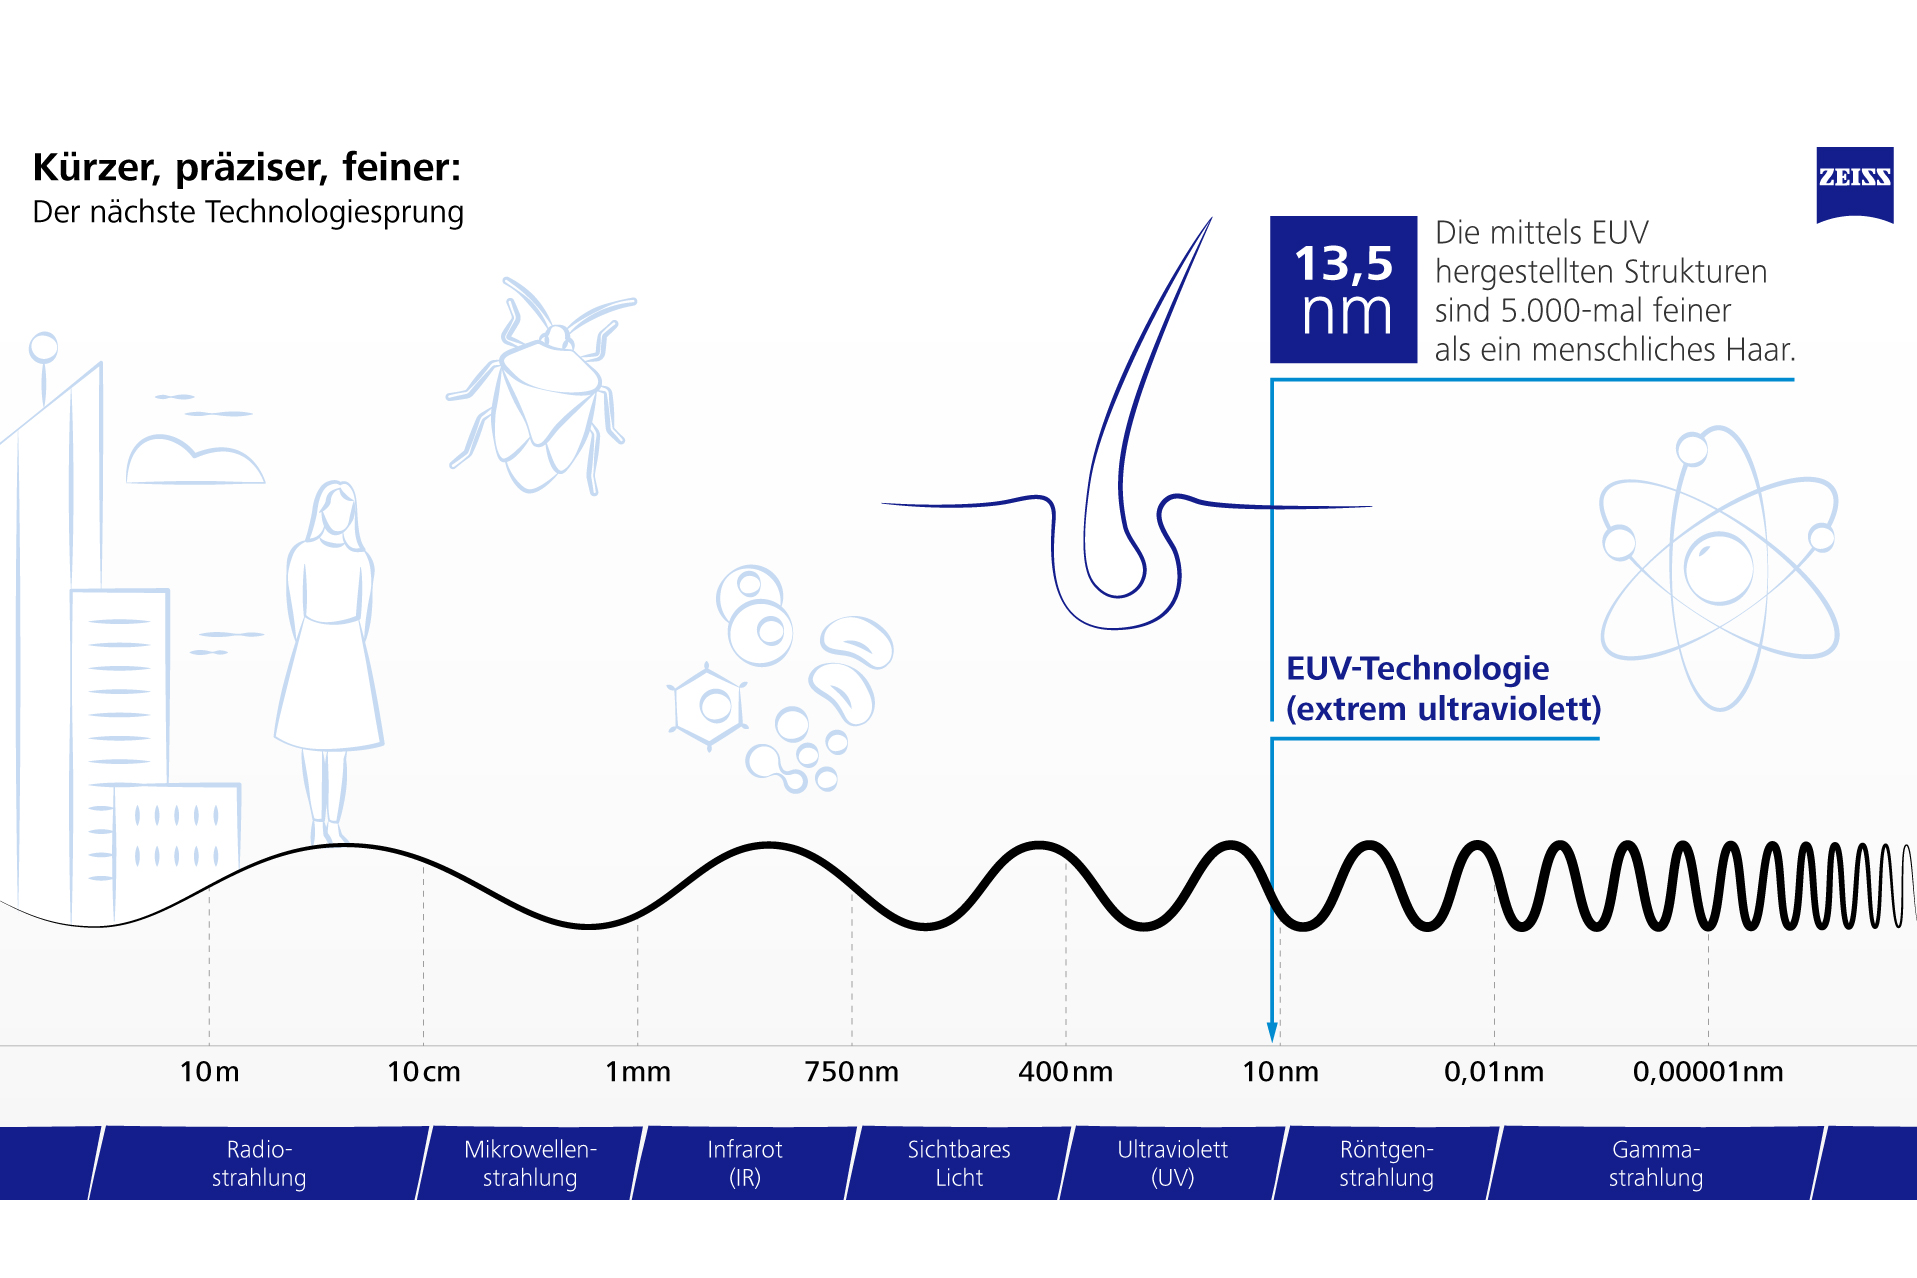 Wellenlängen des Lichts bei der EUV-Technologie im Vergleich zu anderen Lichtsprektren